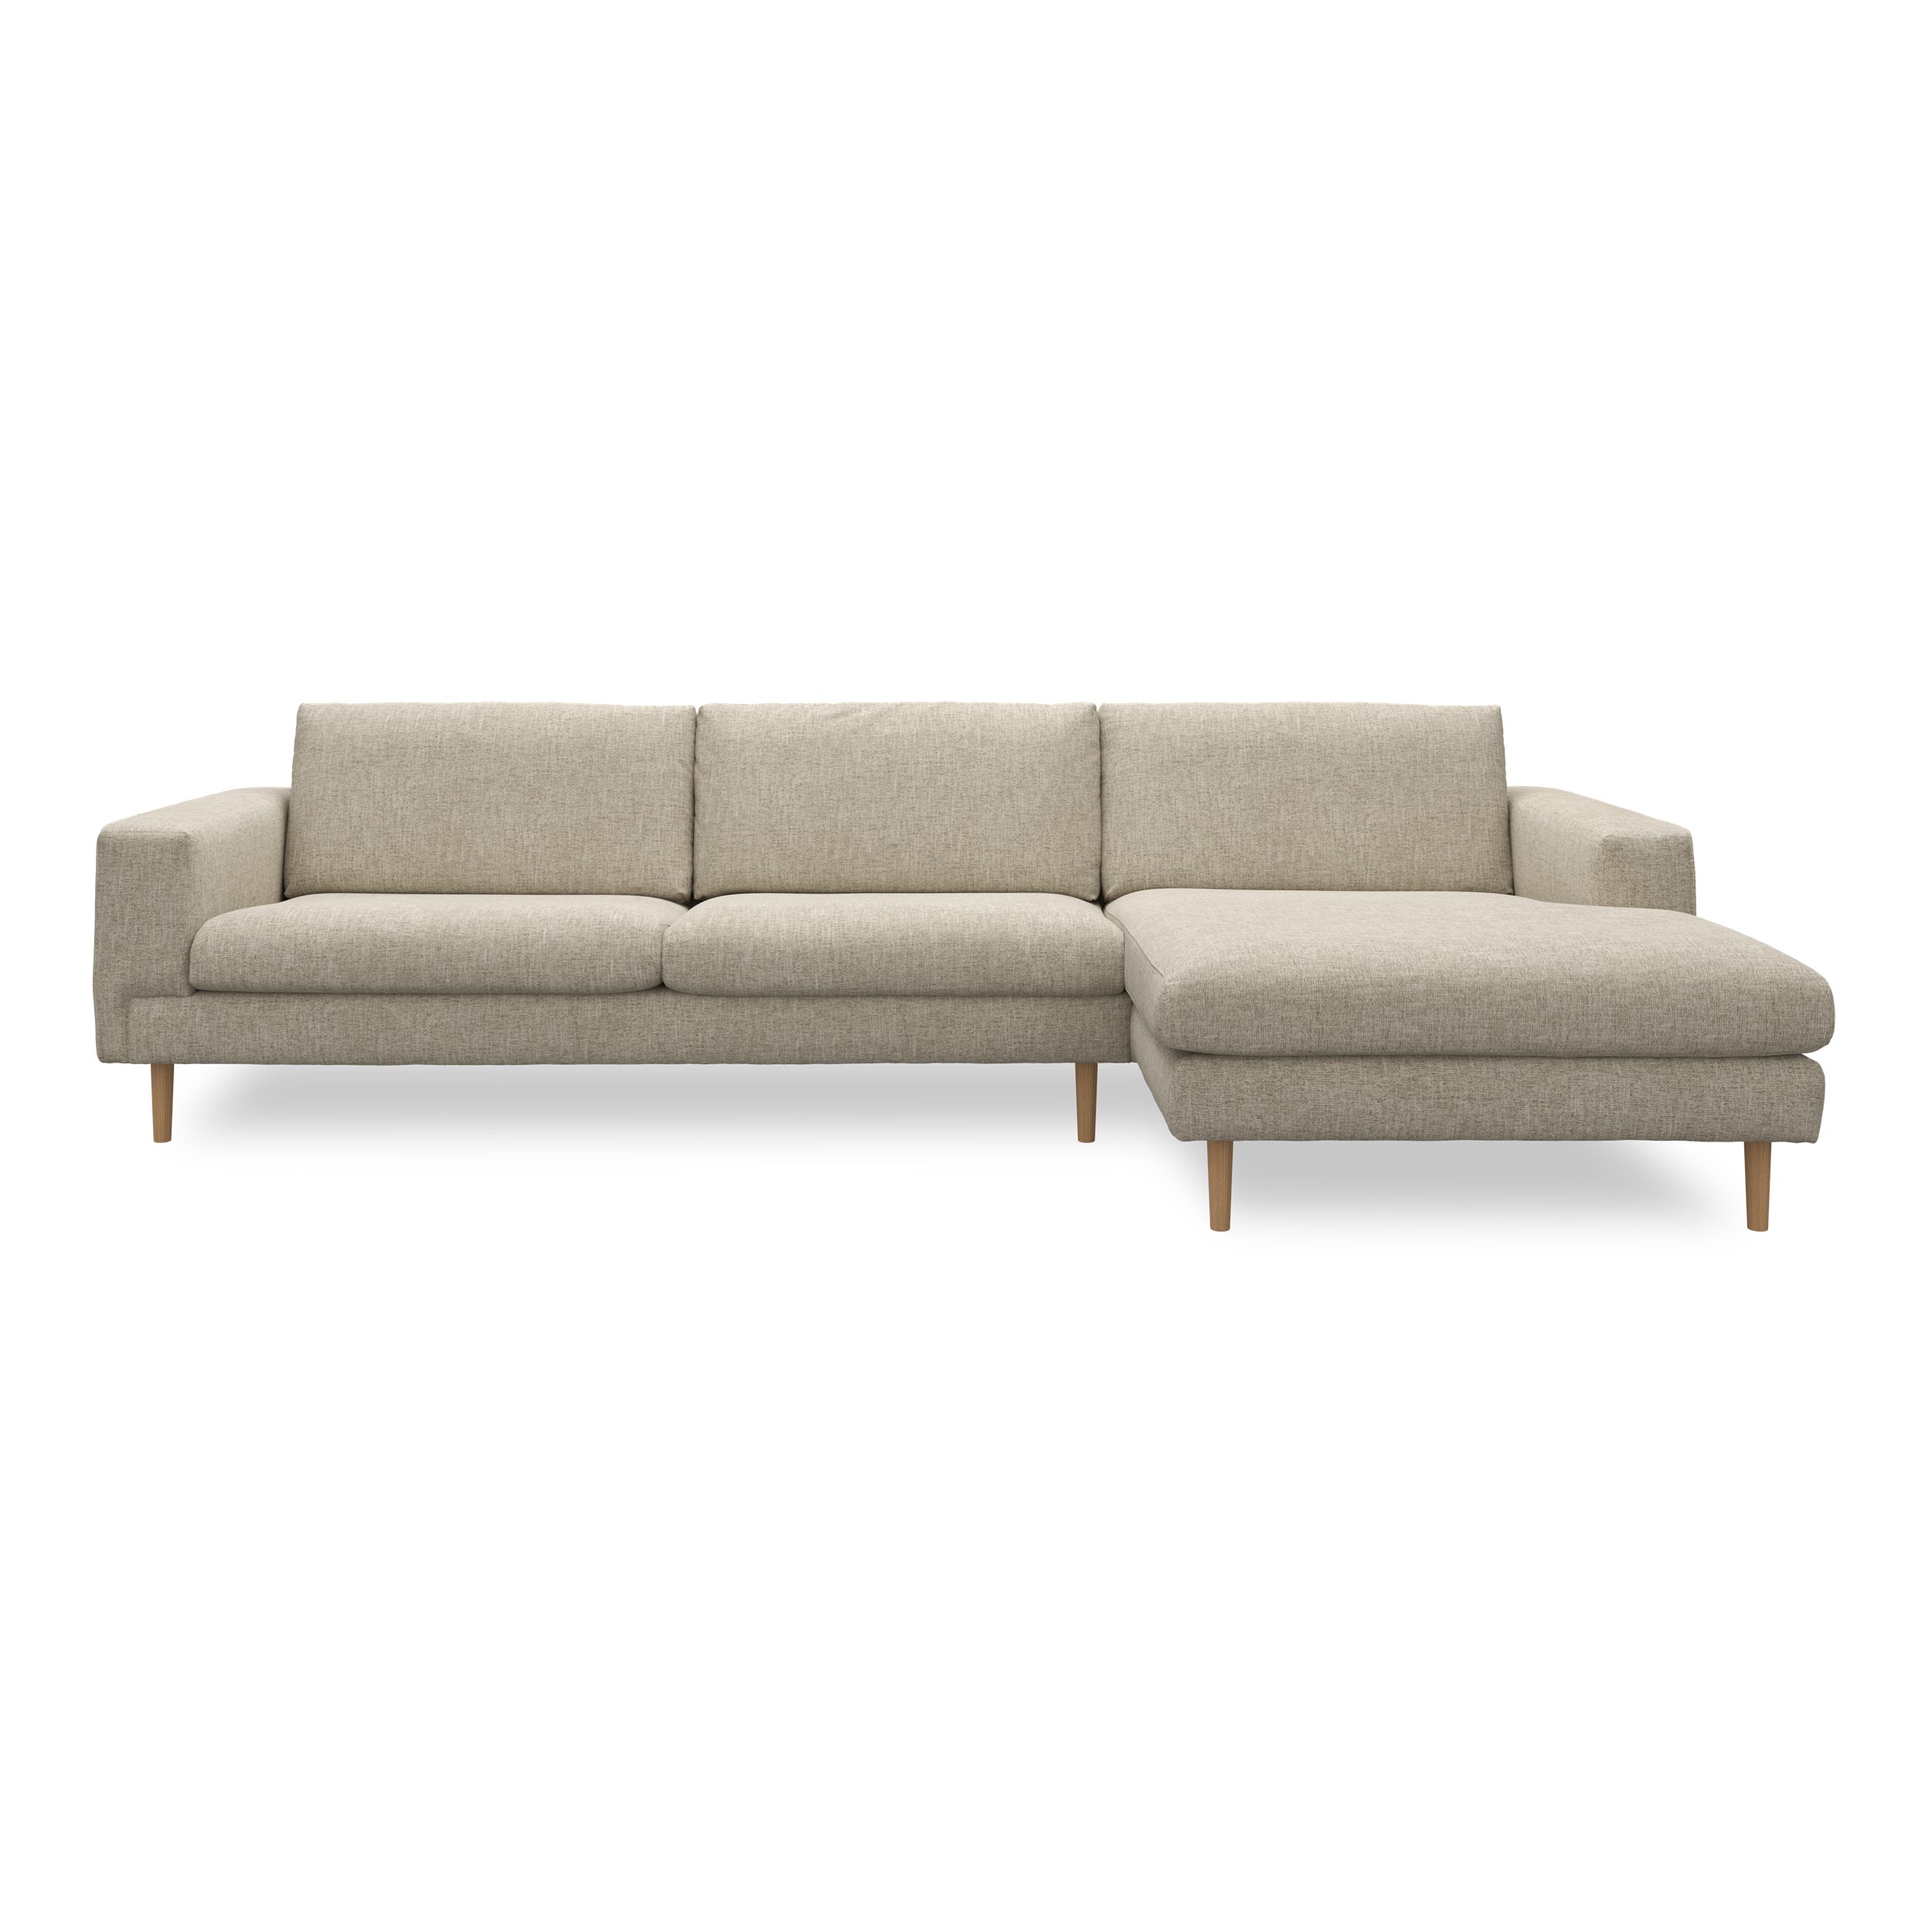 Nyland højrevendt sofa med chaiselong 